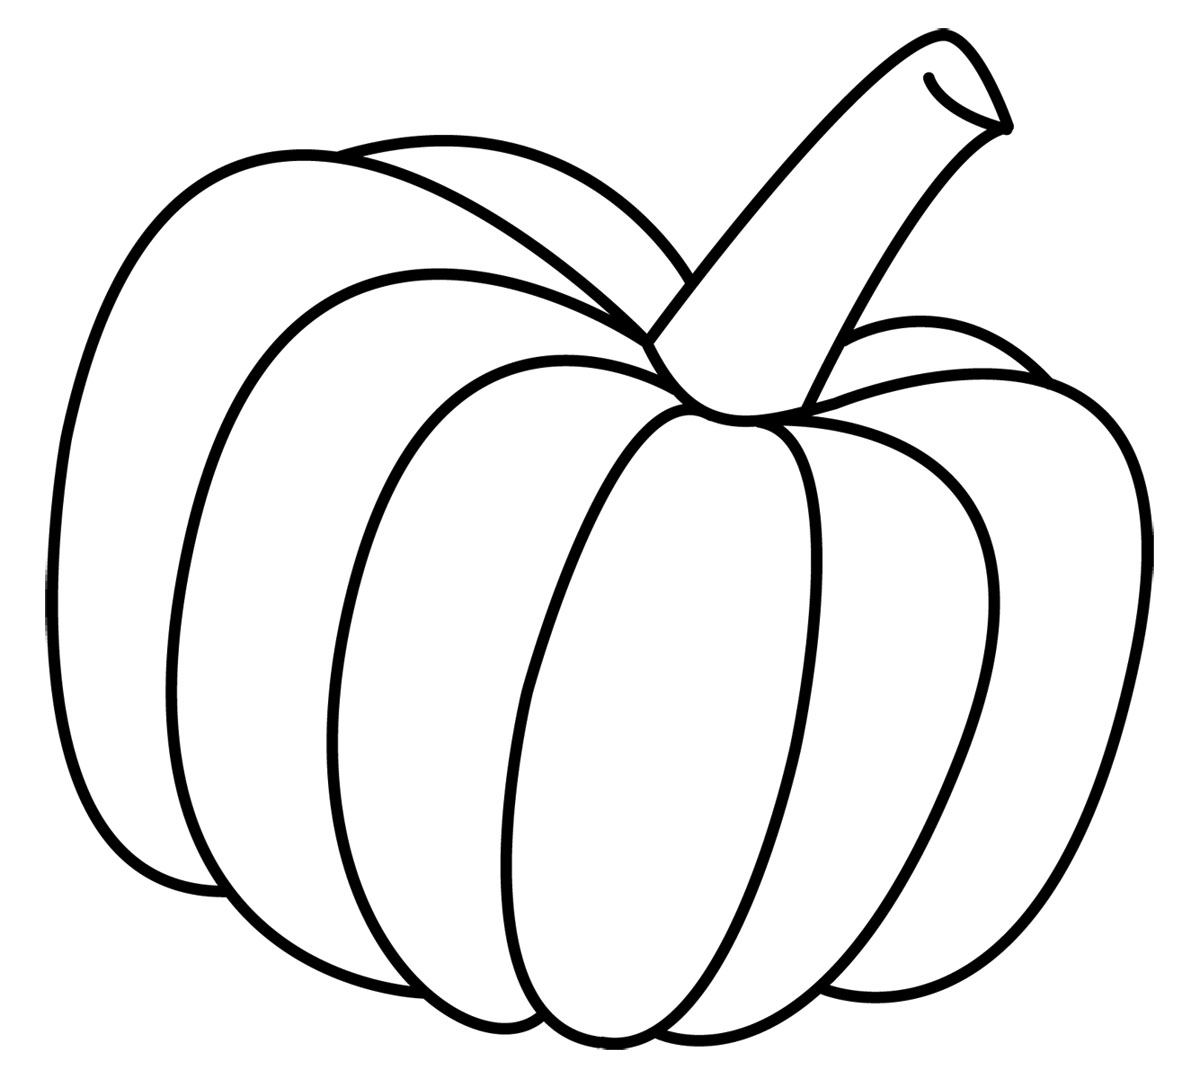 Pumpkin outline clipart - Pumpkin Vegetable clip art ...